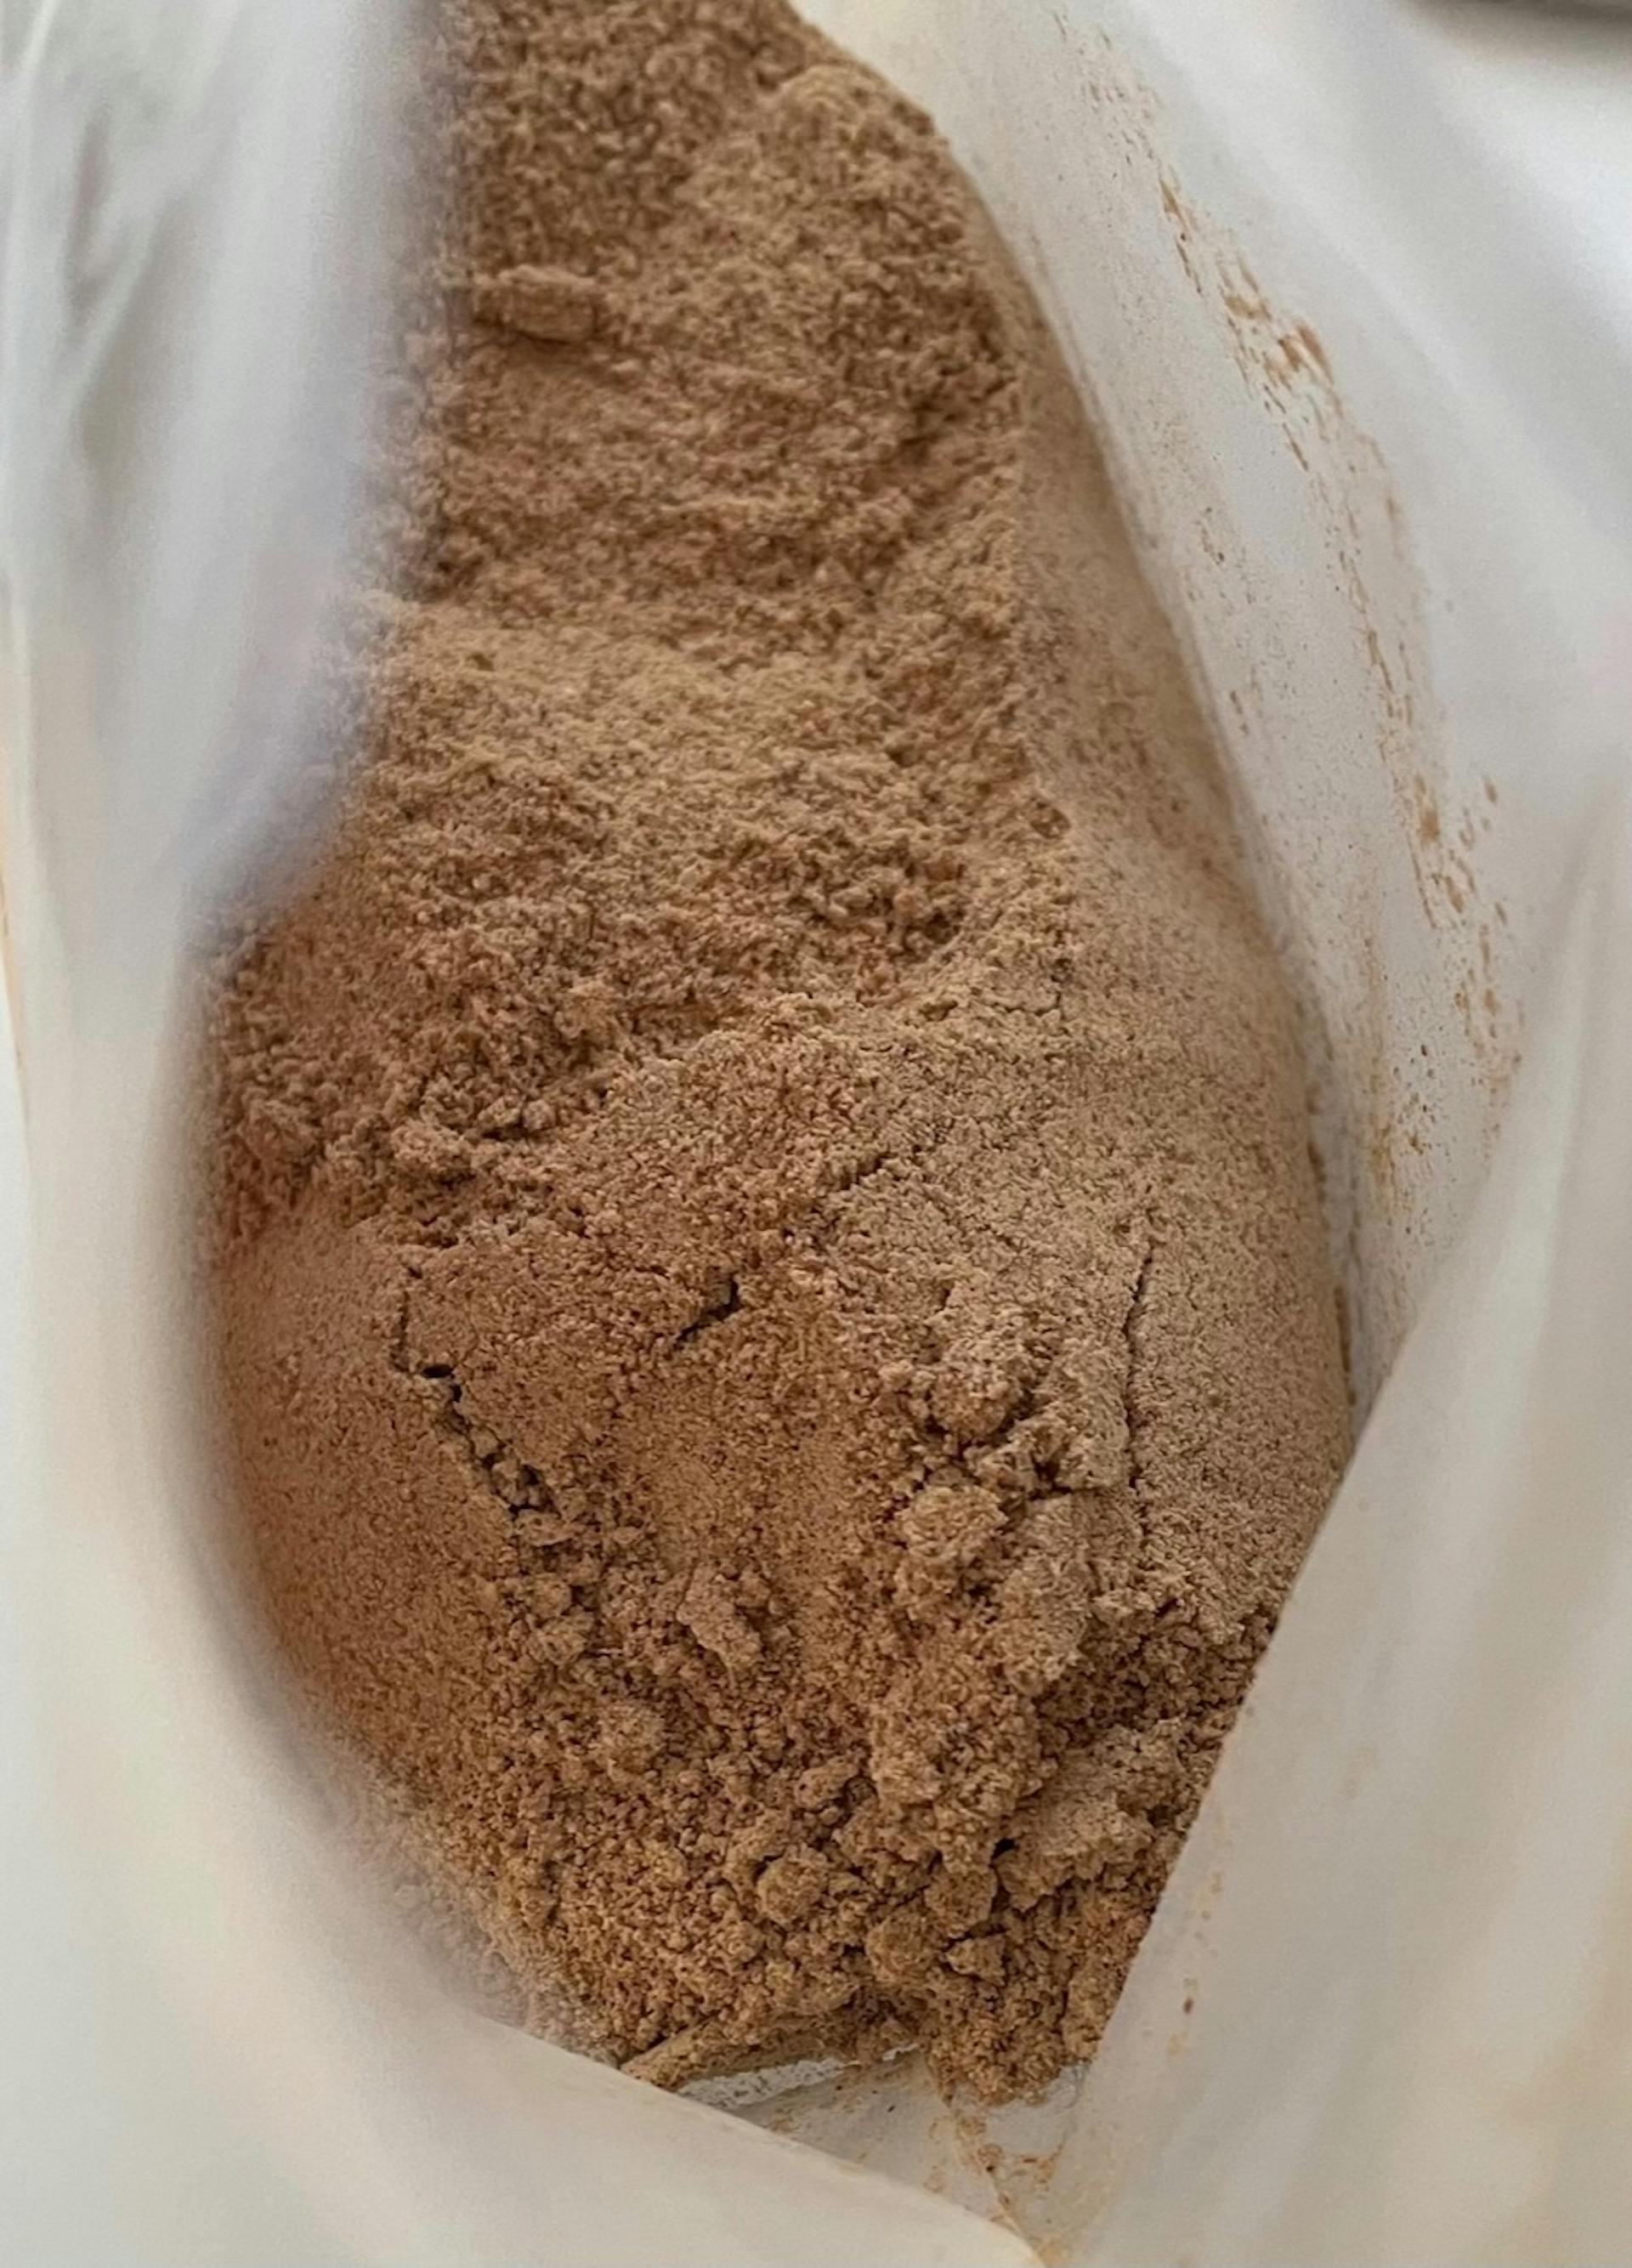 La farine de cacahuète : pourquoi et comment l'utiliser? - Max de